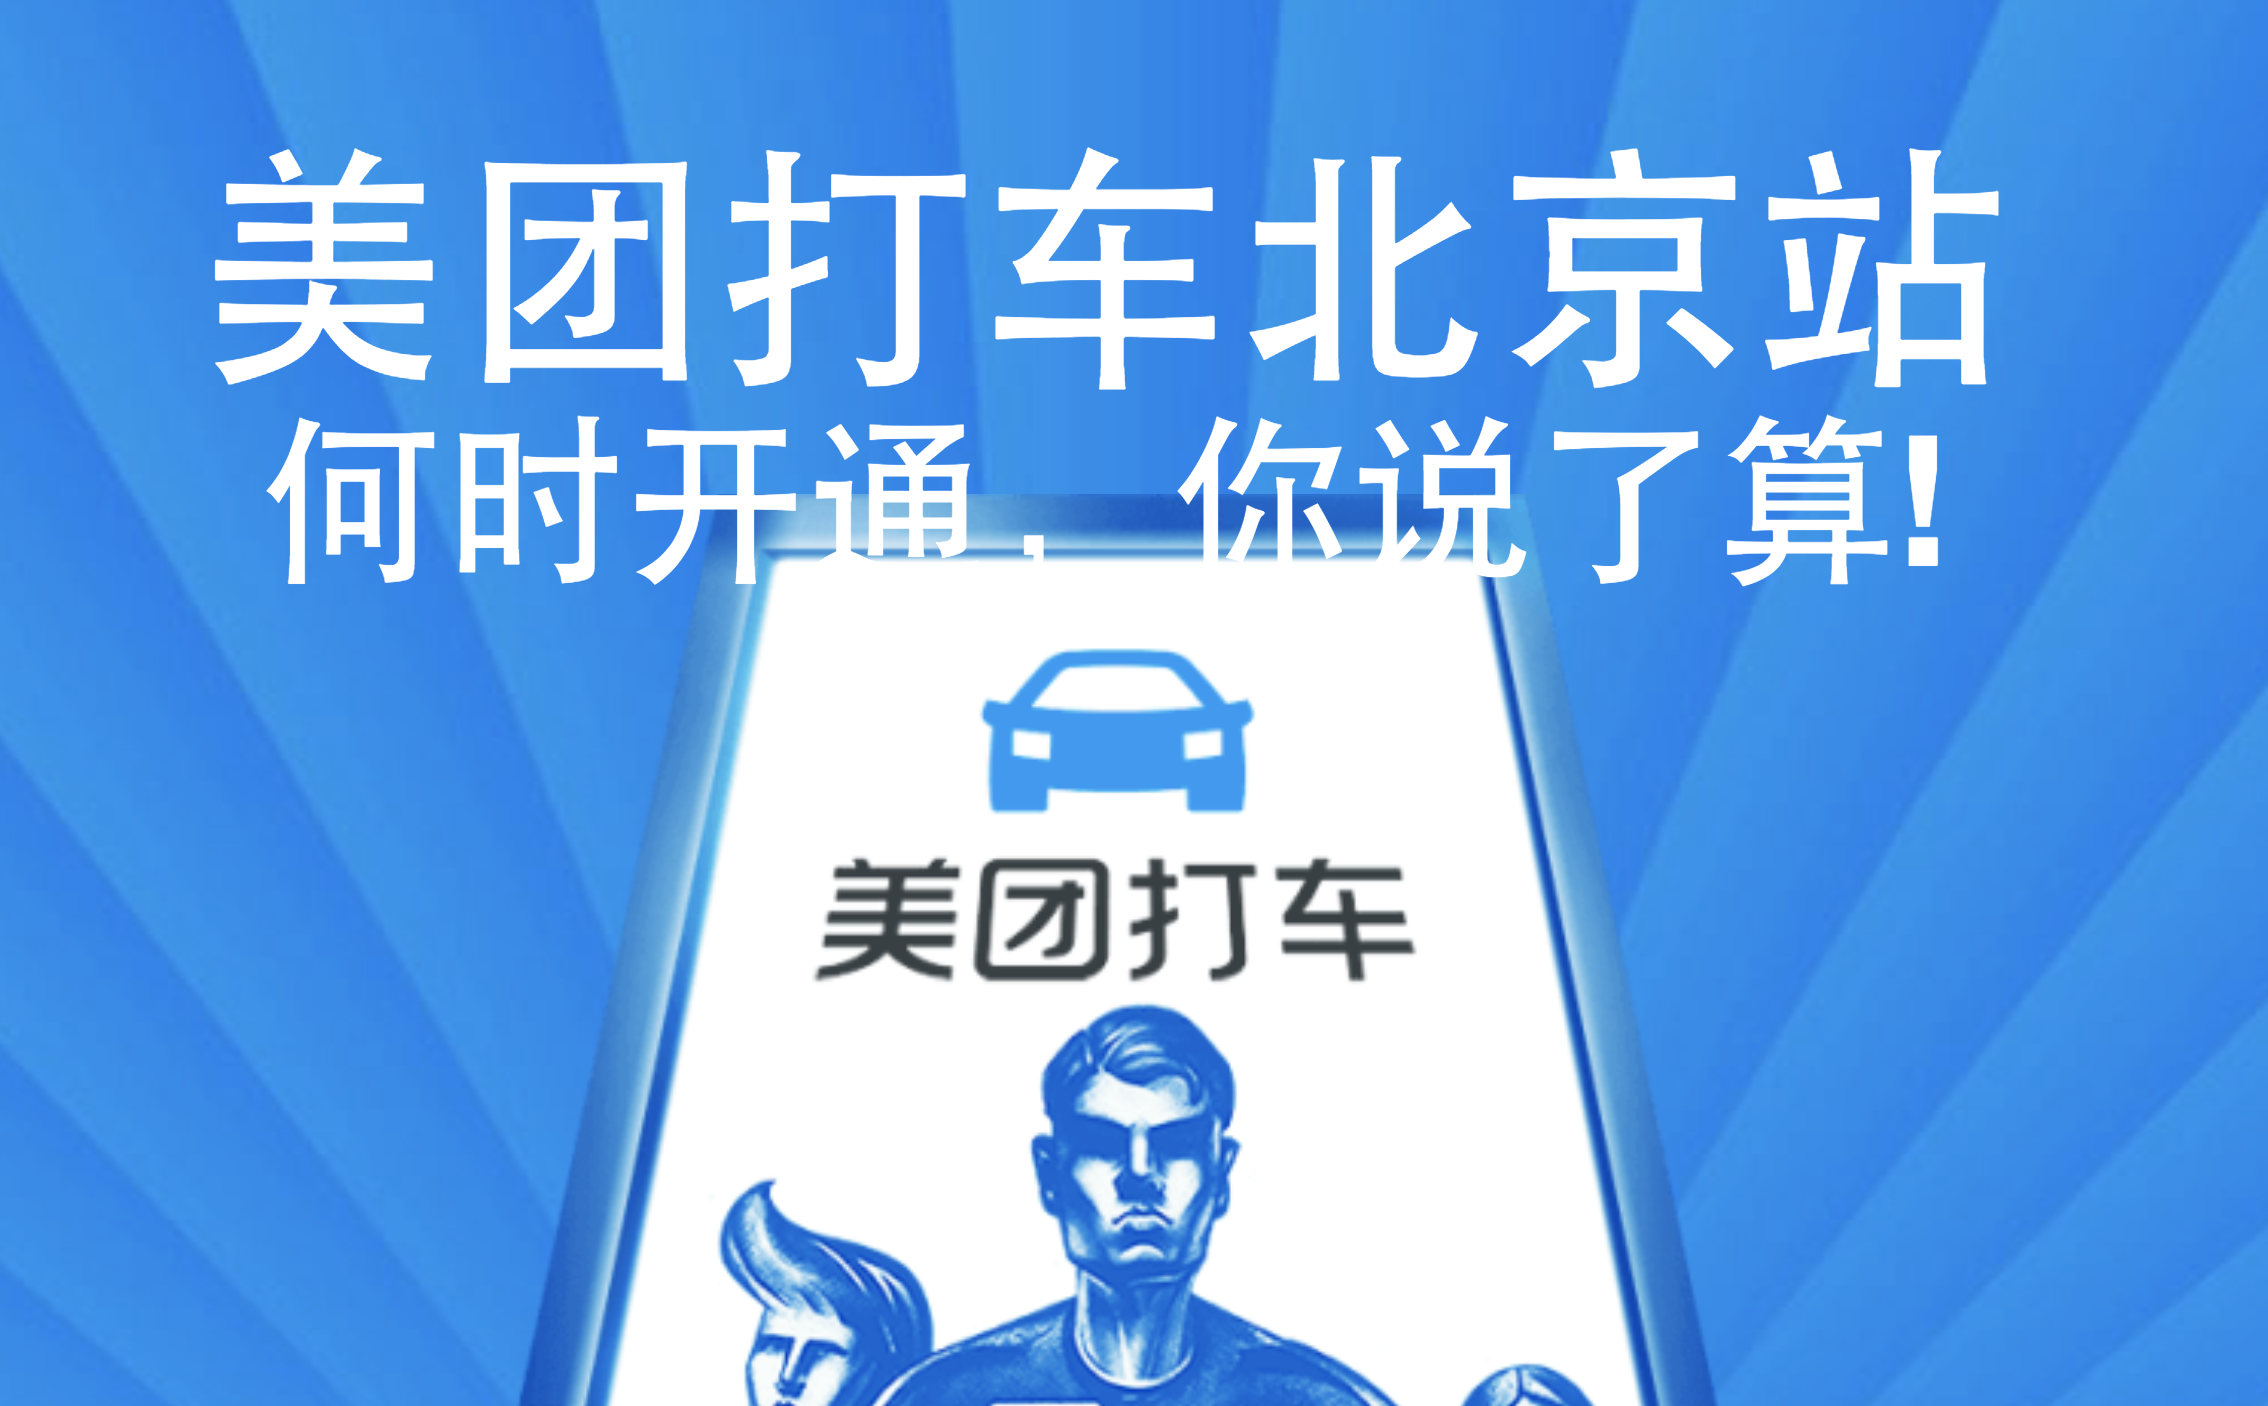 美团打车将进北京,「网约车二战」即将打响 | 极